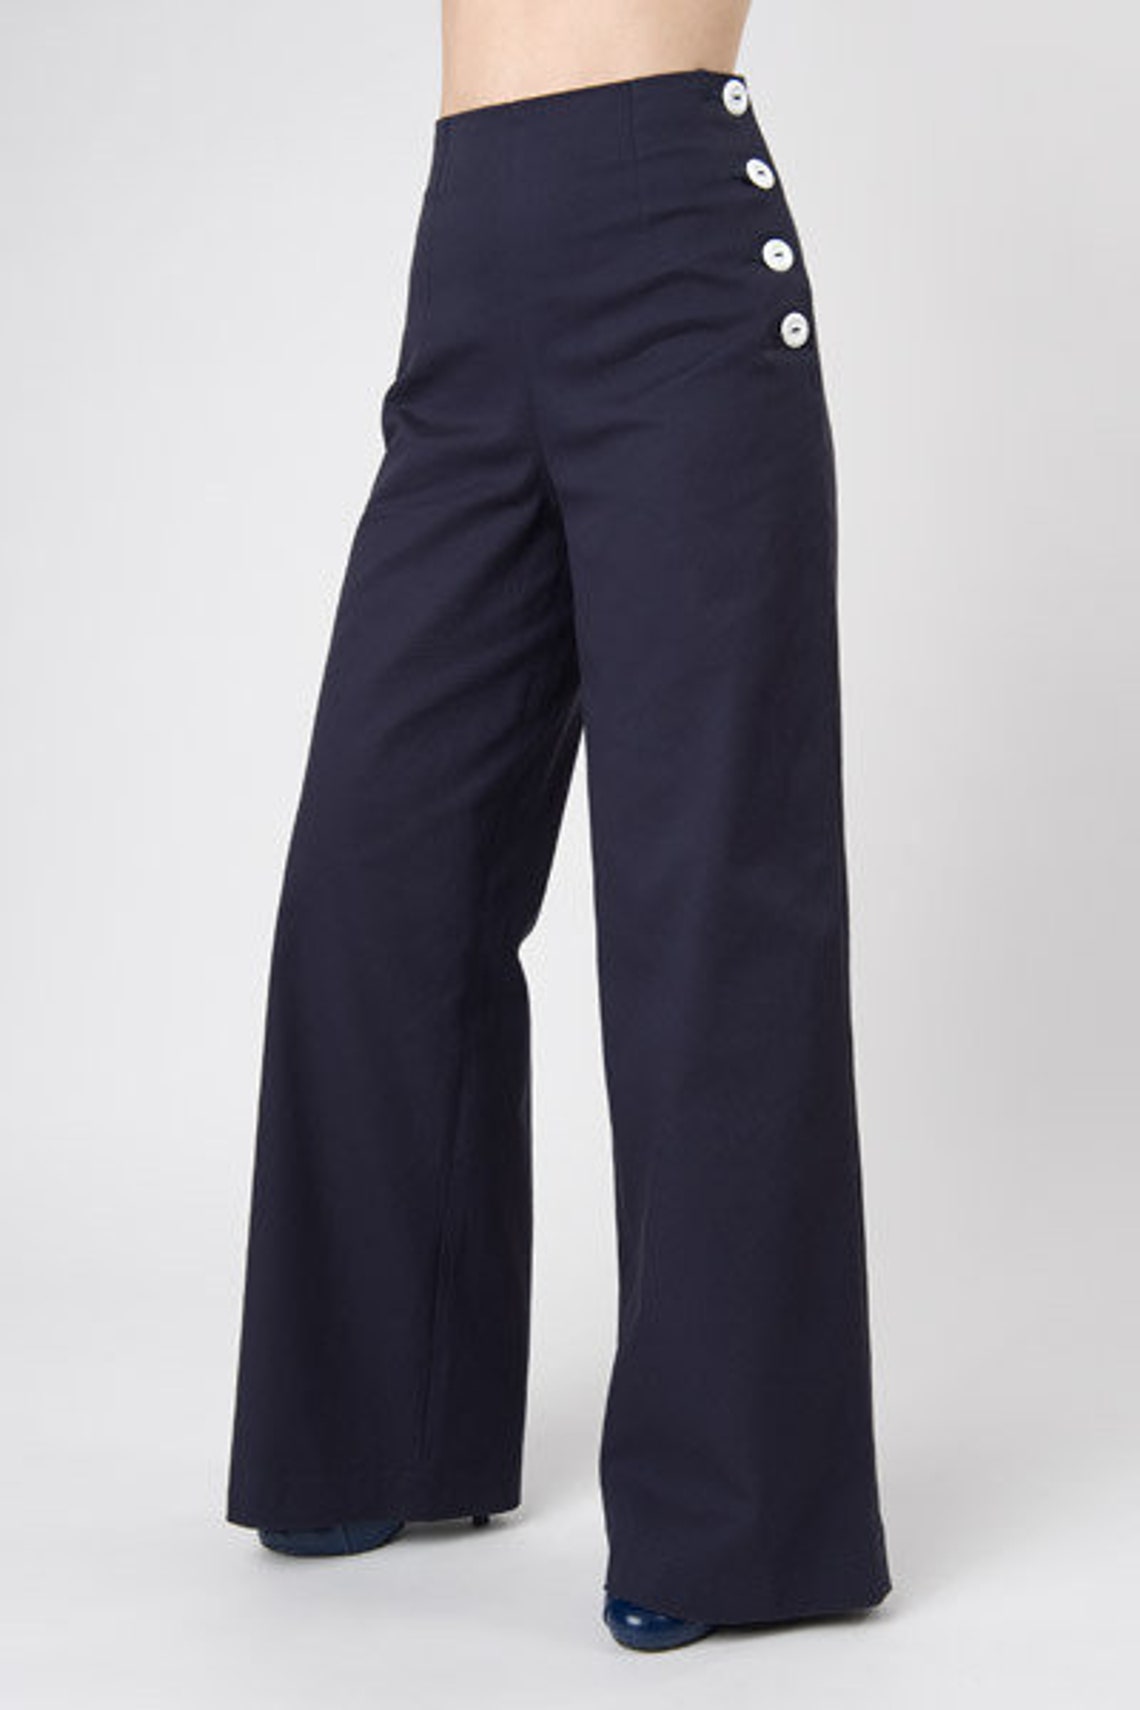 Pants sailor Boogie Marlenepants in Vintage | Etsy